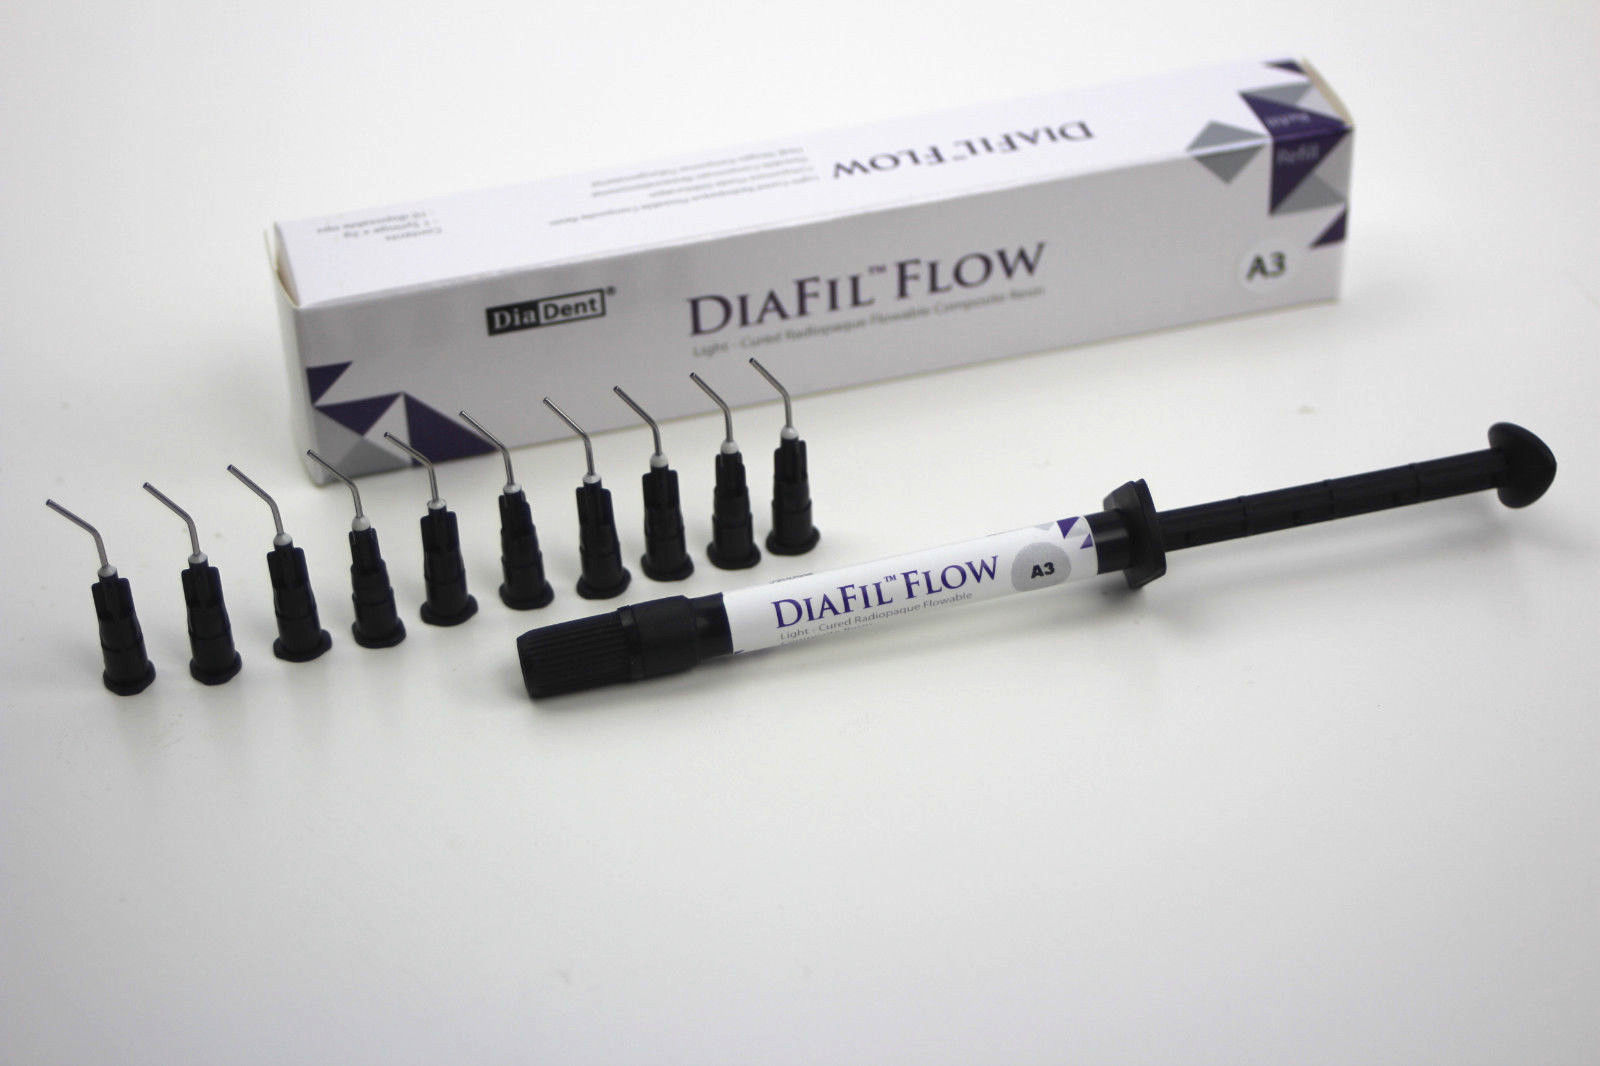 DiaFill Flow (ДиаФил) А3 - жидкотекучий композит 2г